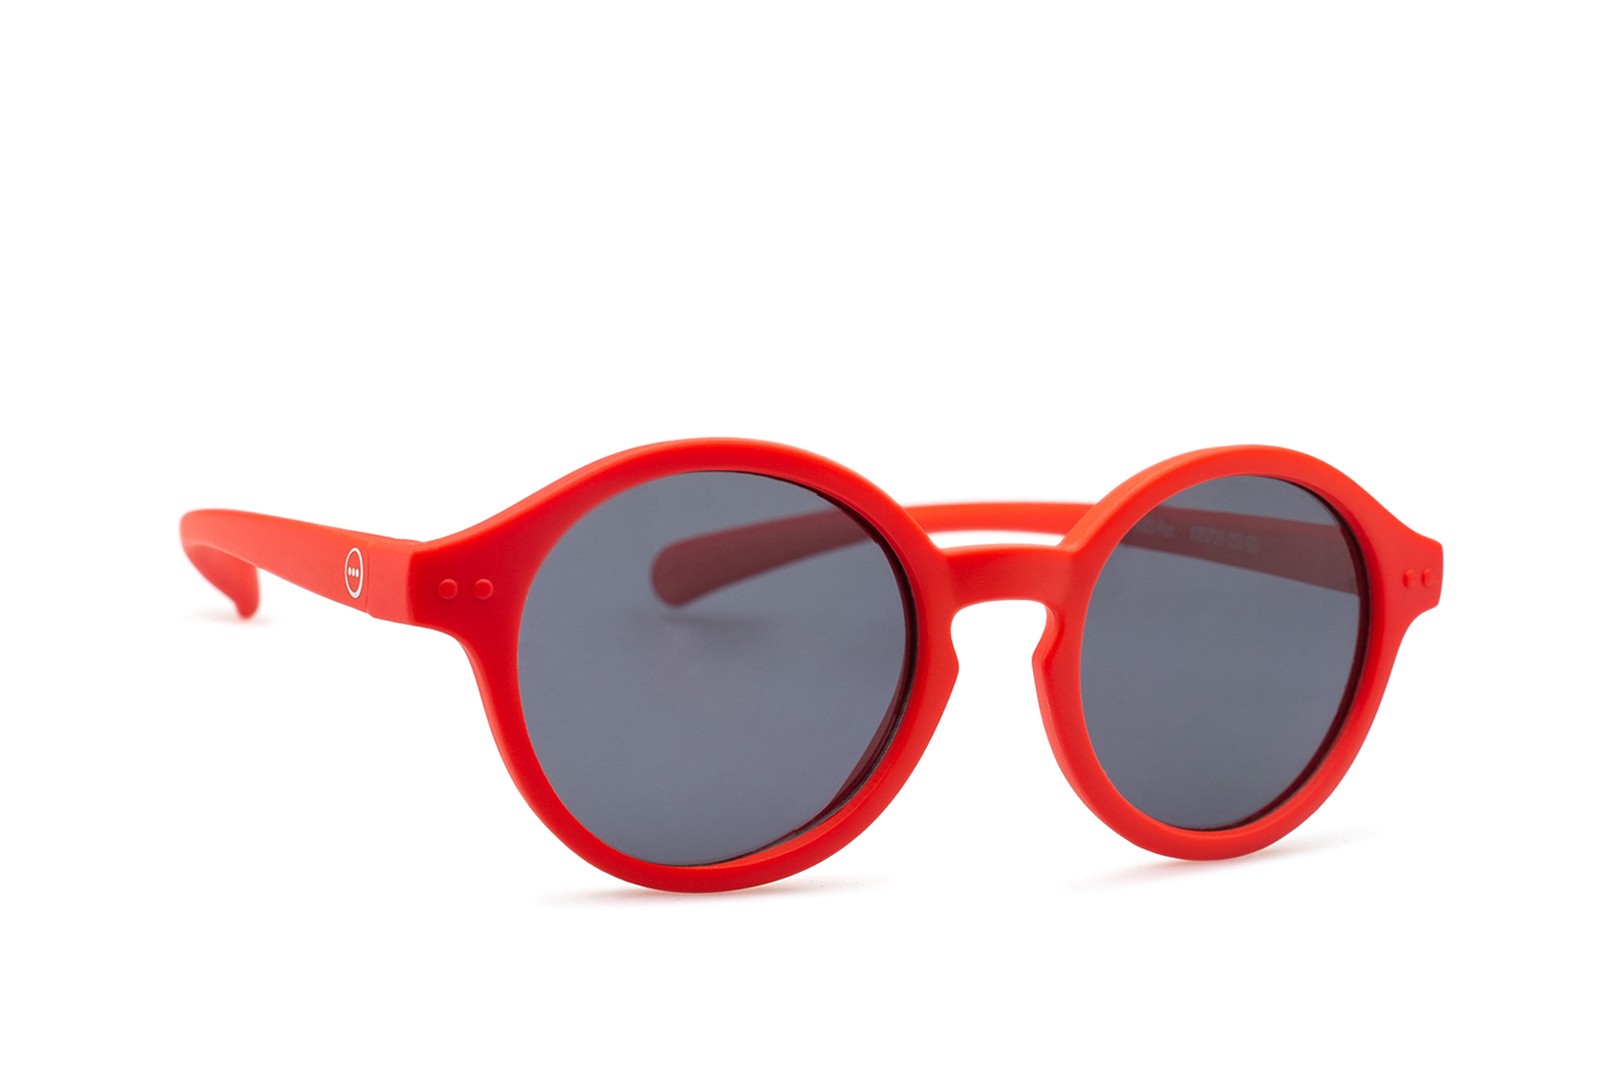 IZIPIZI #BABY Red Sunglasses +0